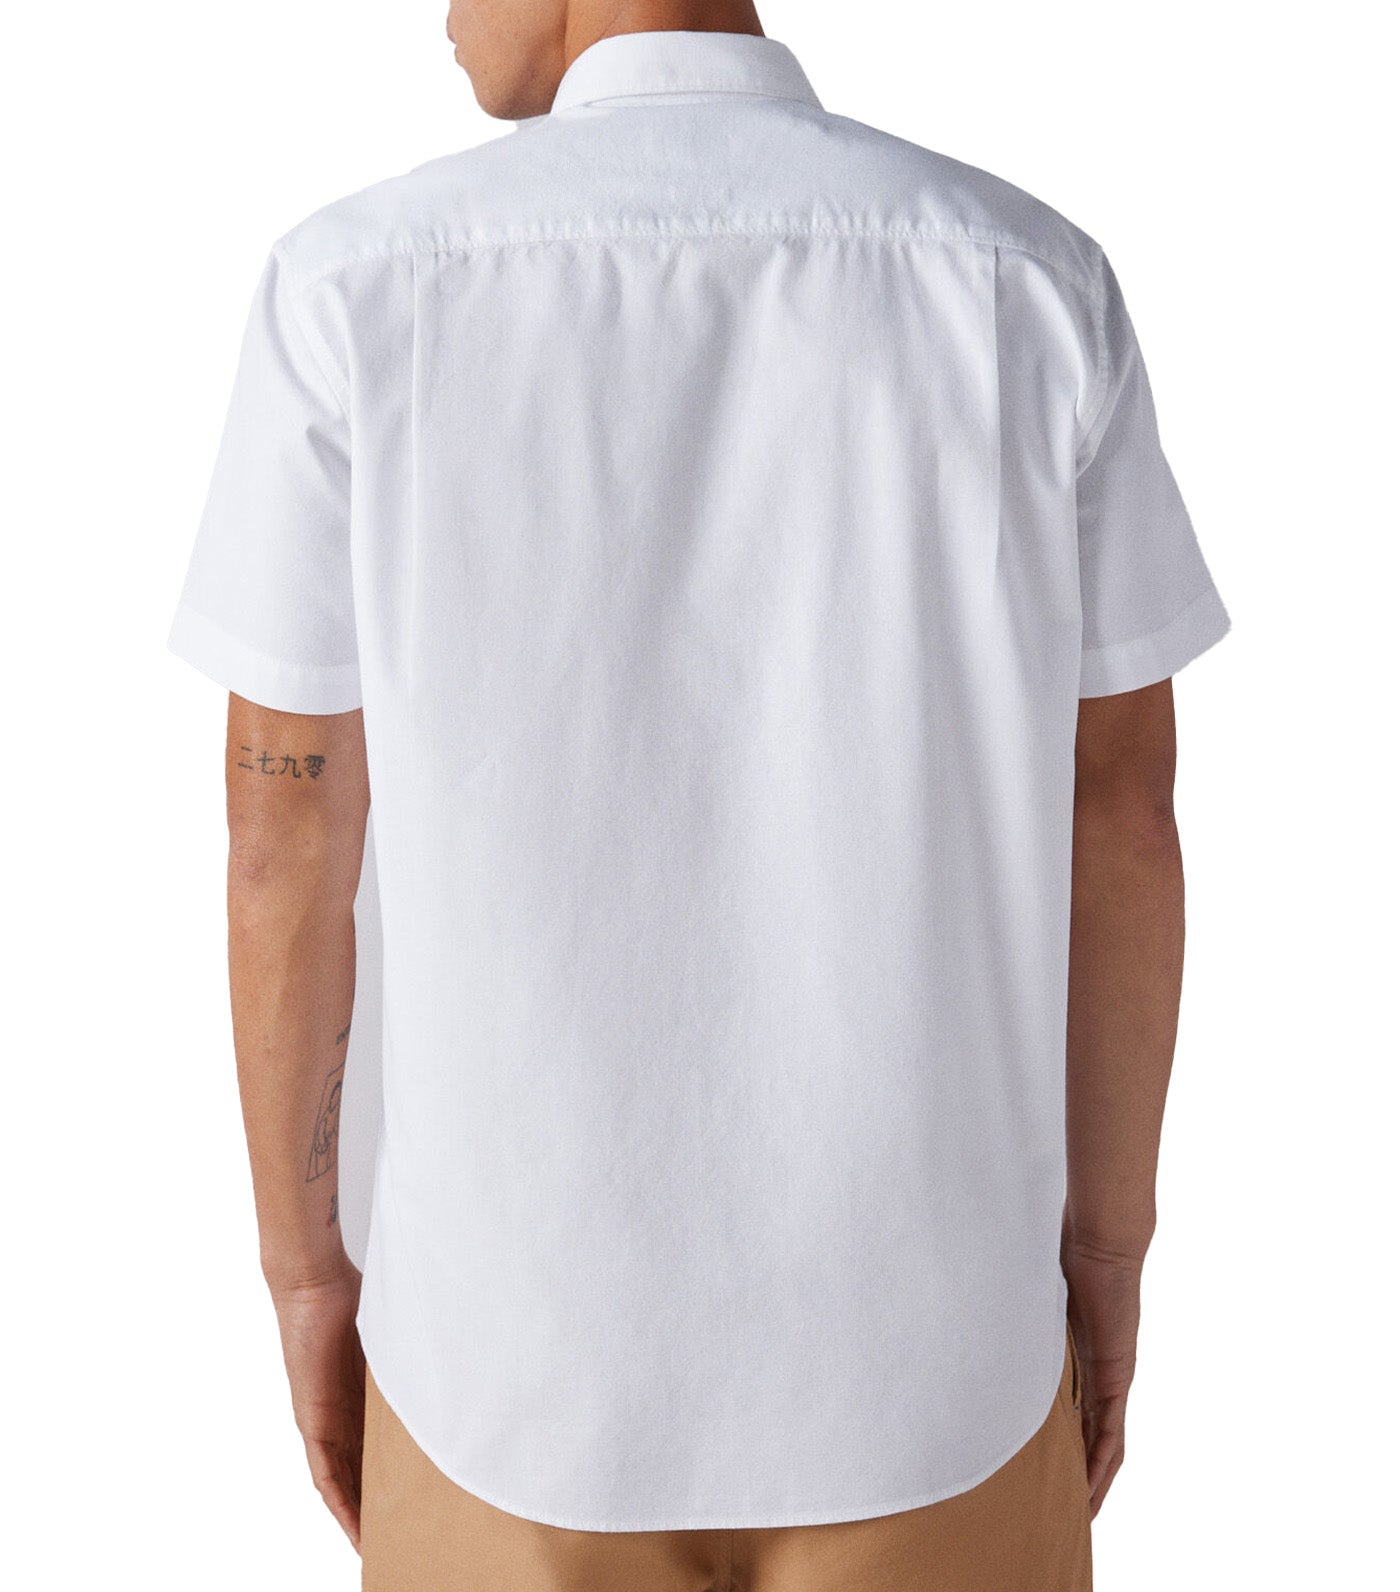 Short-Sleeved Shirt White